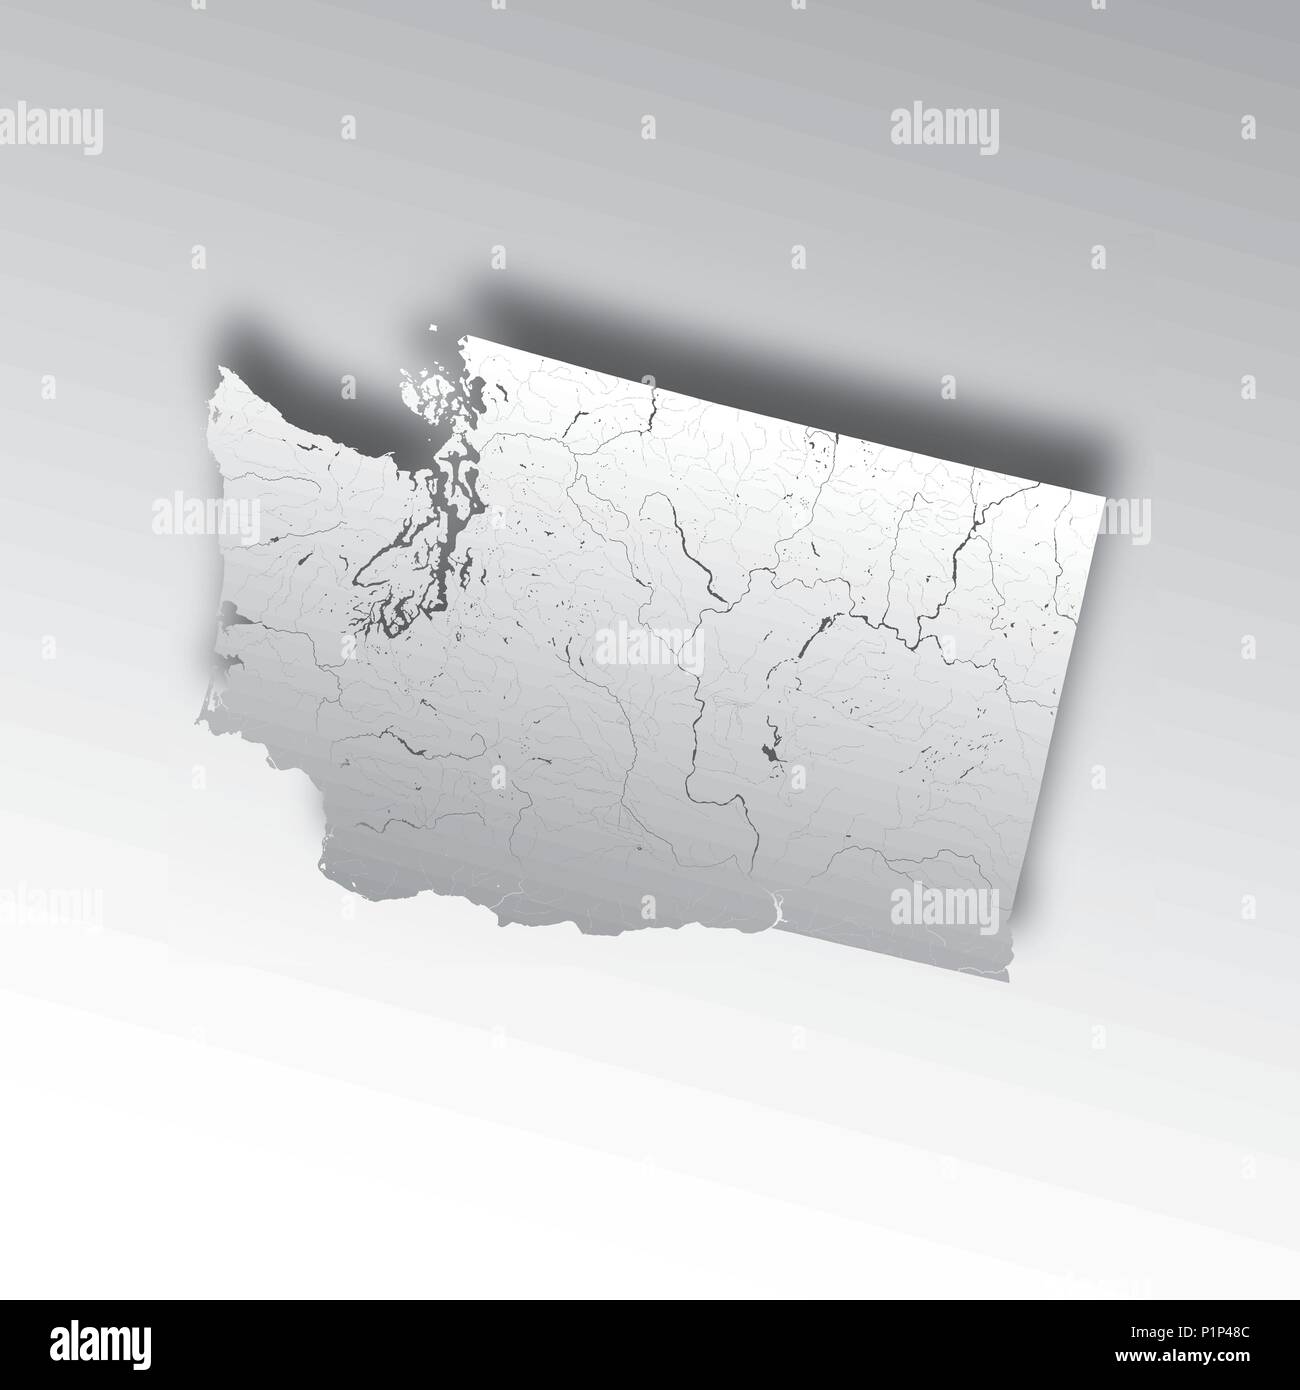 Der USA-Karte von Washington mit Papier schneiden. Hand gemacht. Flüsse und Seen sind dargestellt. Bitte sehen Sie sich meine anderen Bilder von kartographischen Serie - Stock Vektor